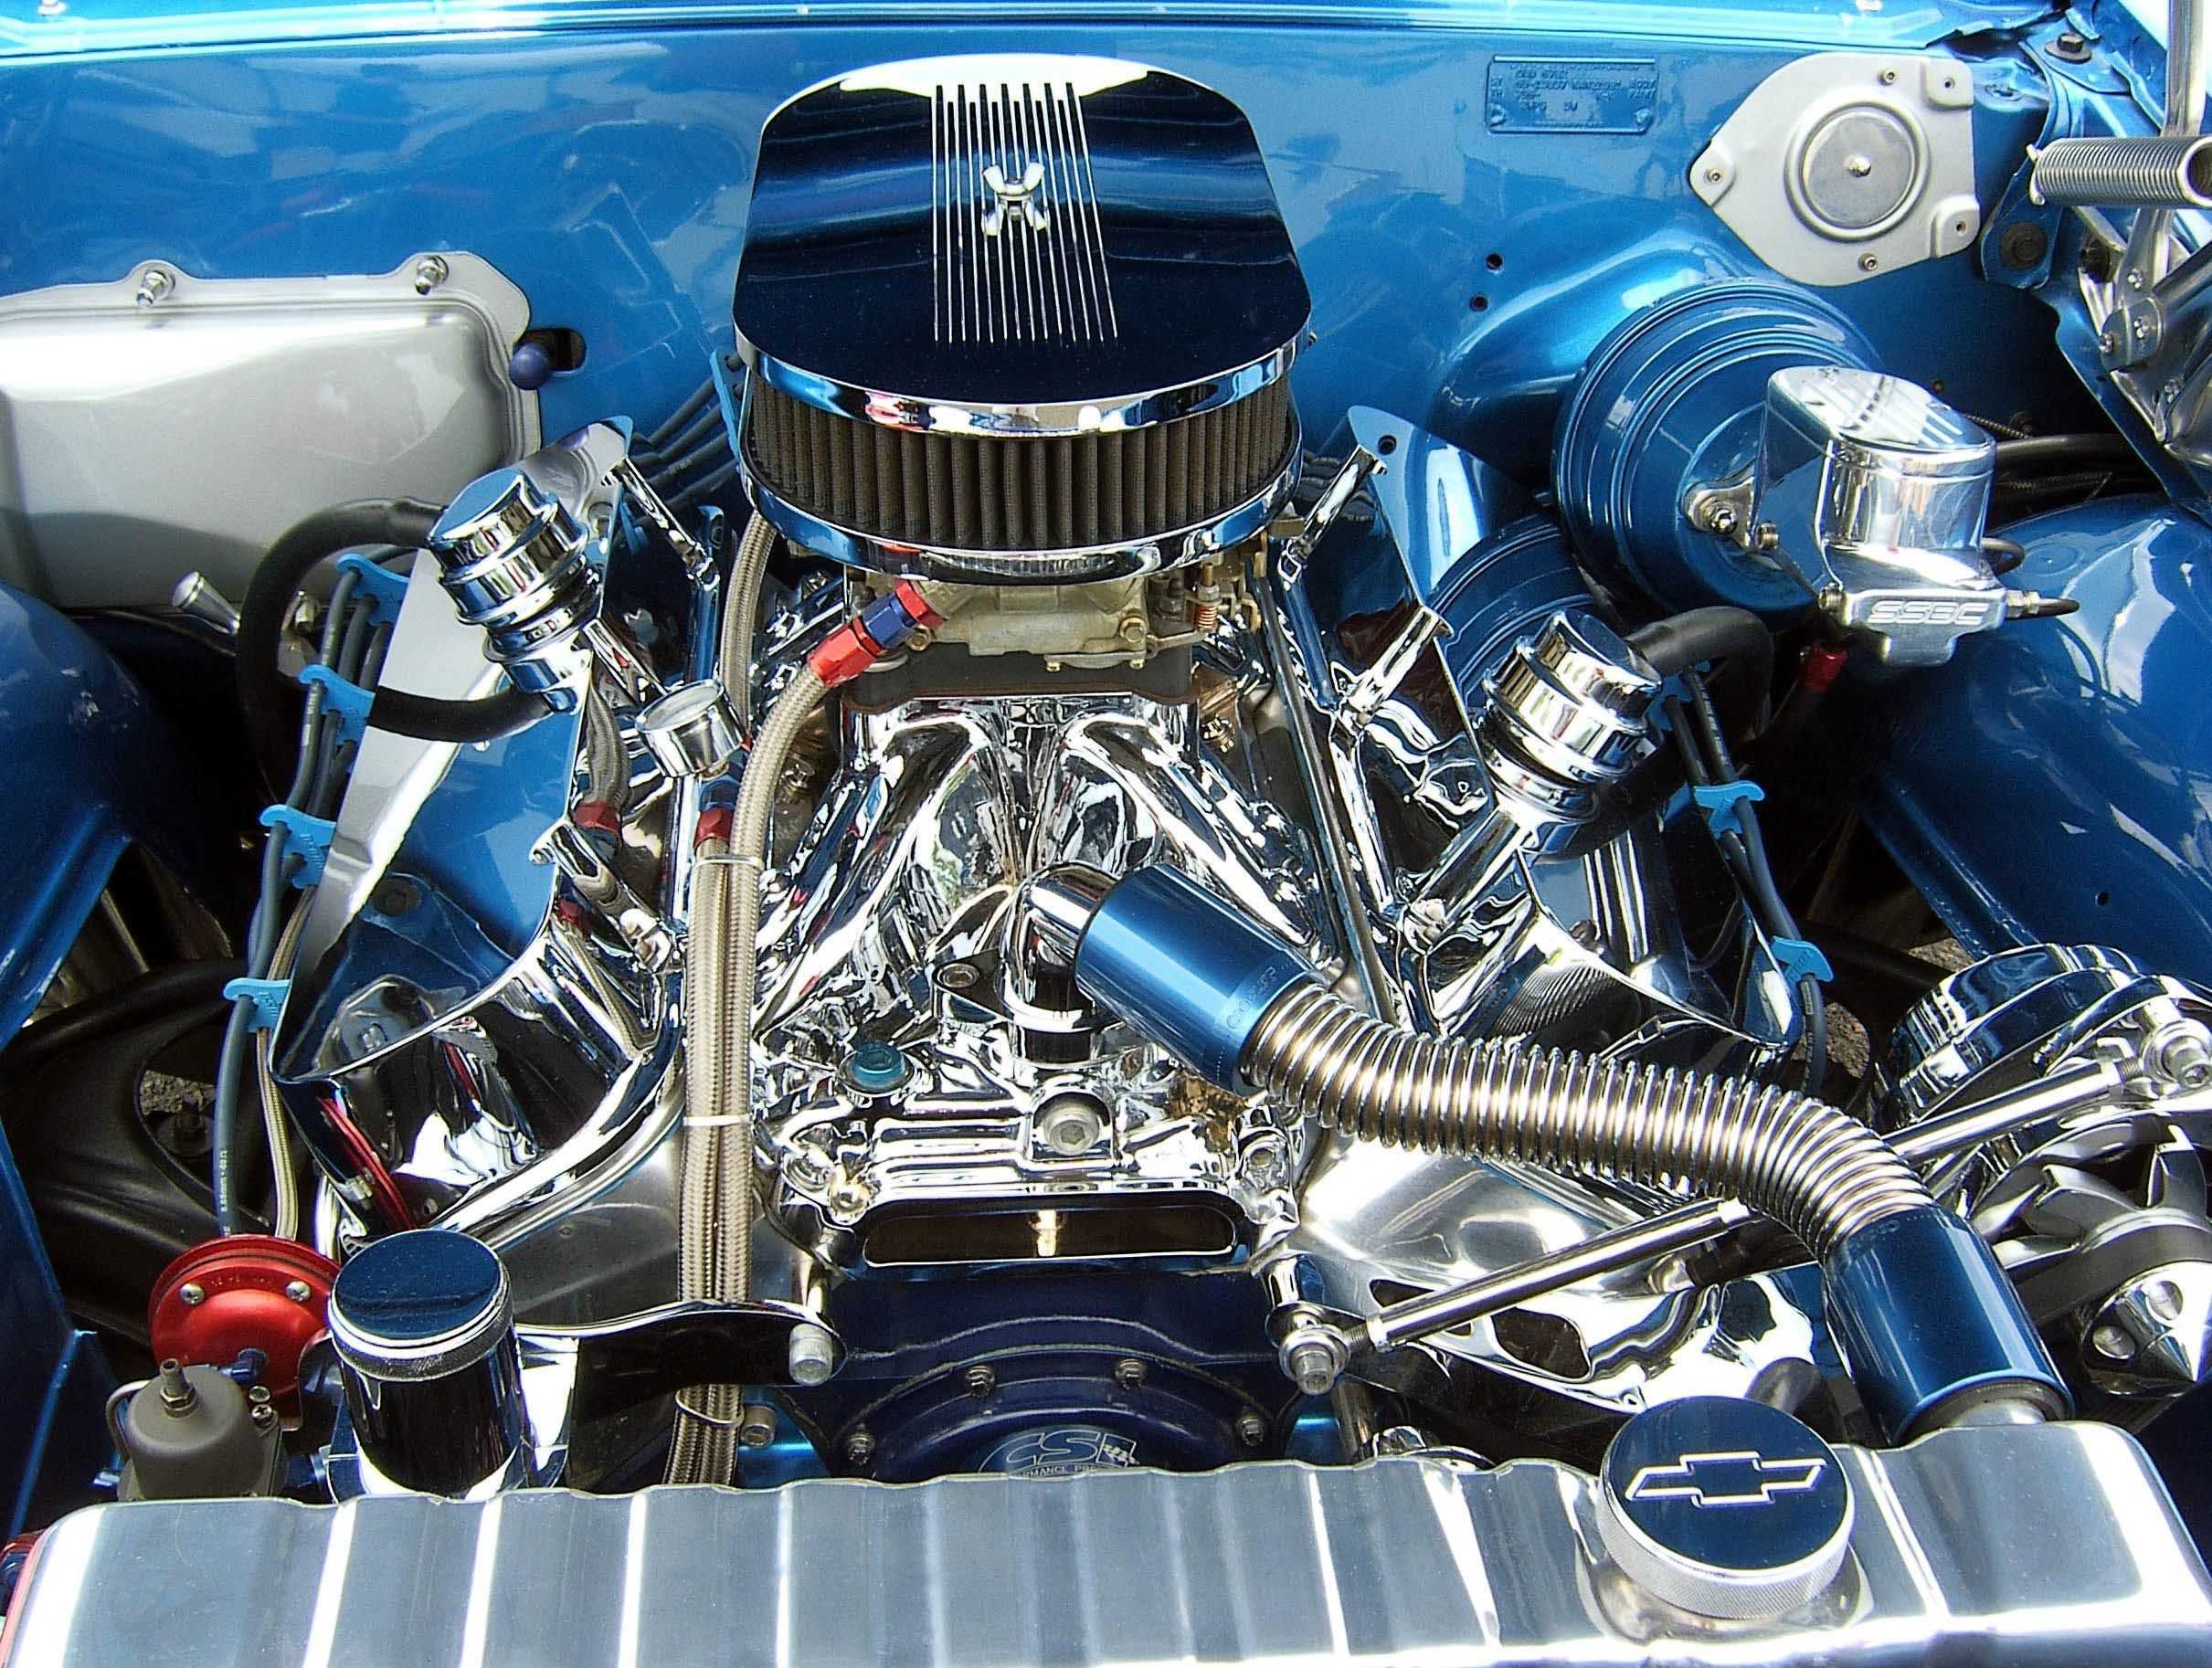 Двигатель на автомобиле является. Маслкары с двигателем v8. Мотор в8. Bds 8-71 нагнетатель Чарджер. Мотор v8 4,3 Маслкар.